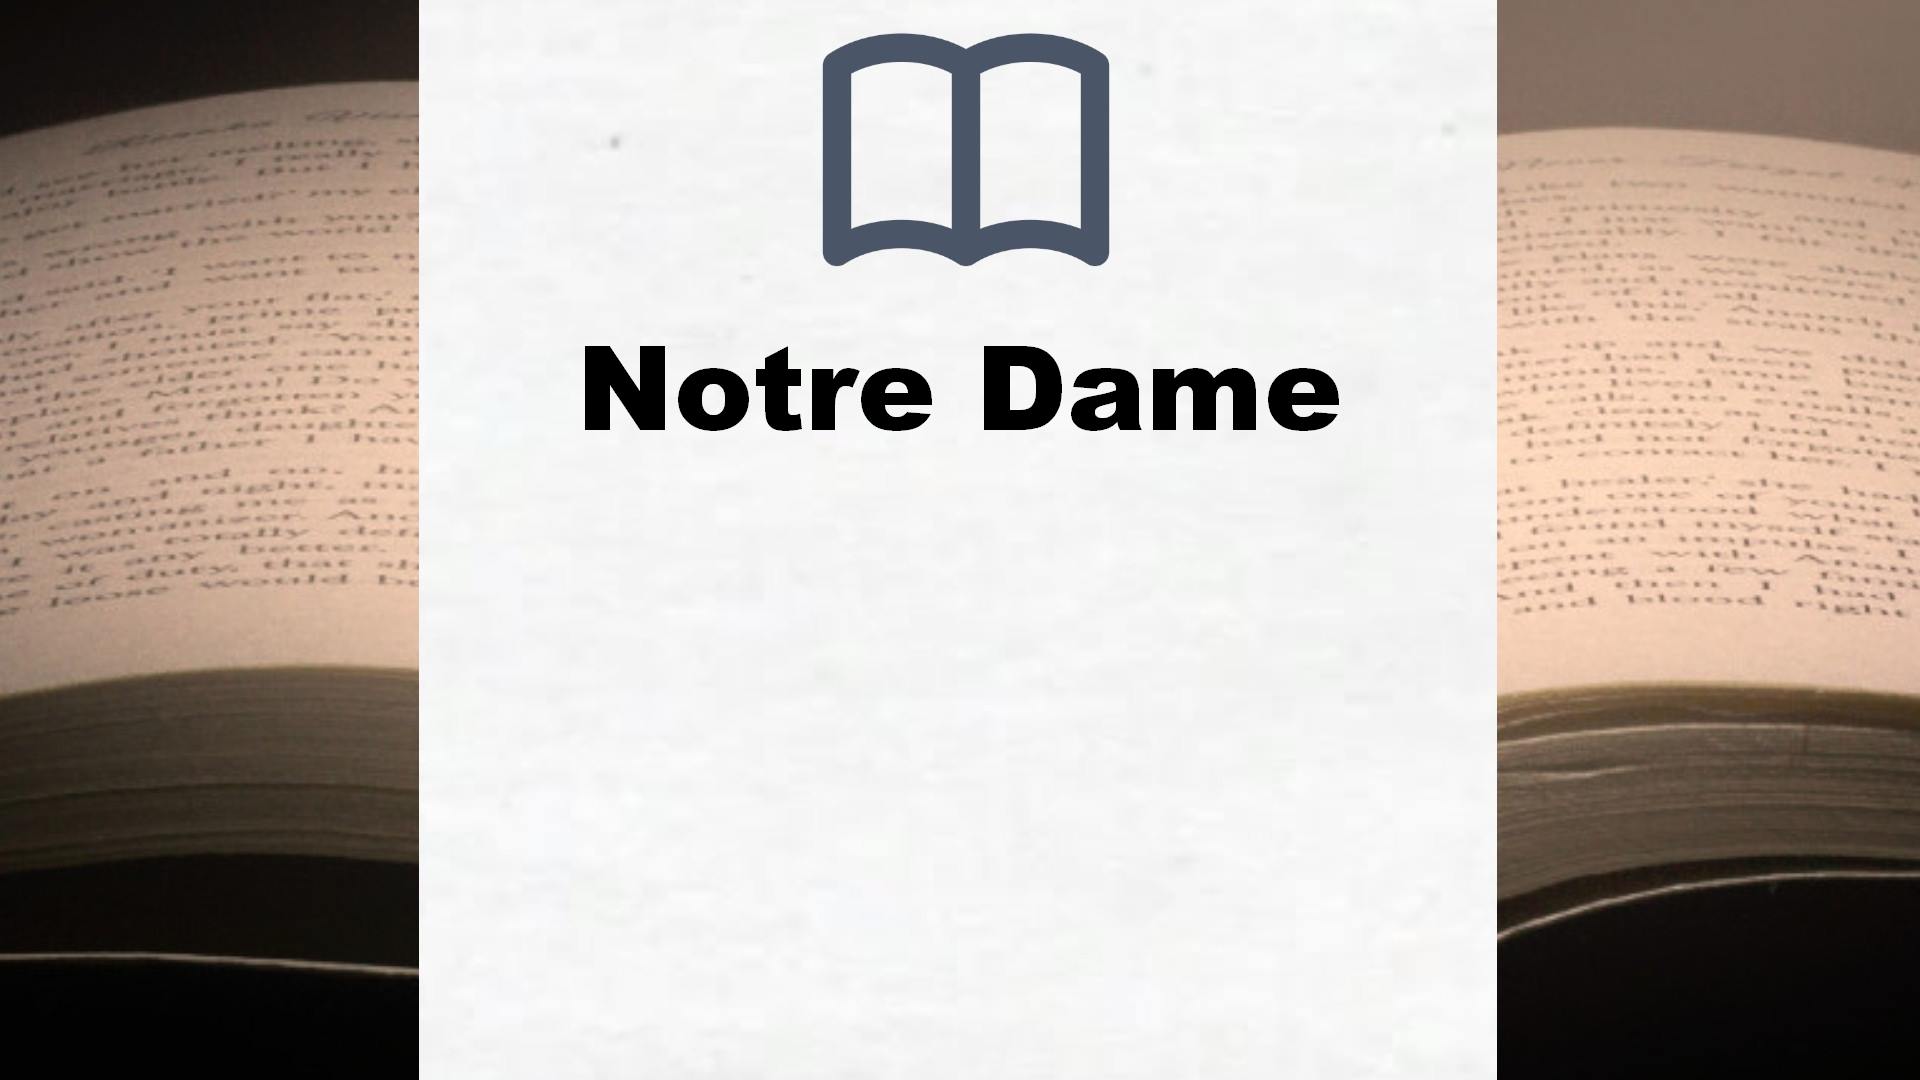 Bücher über Notre Dame